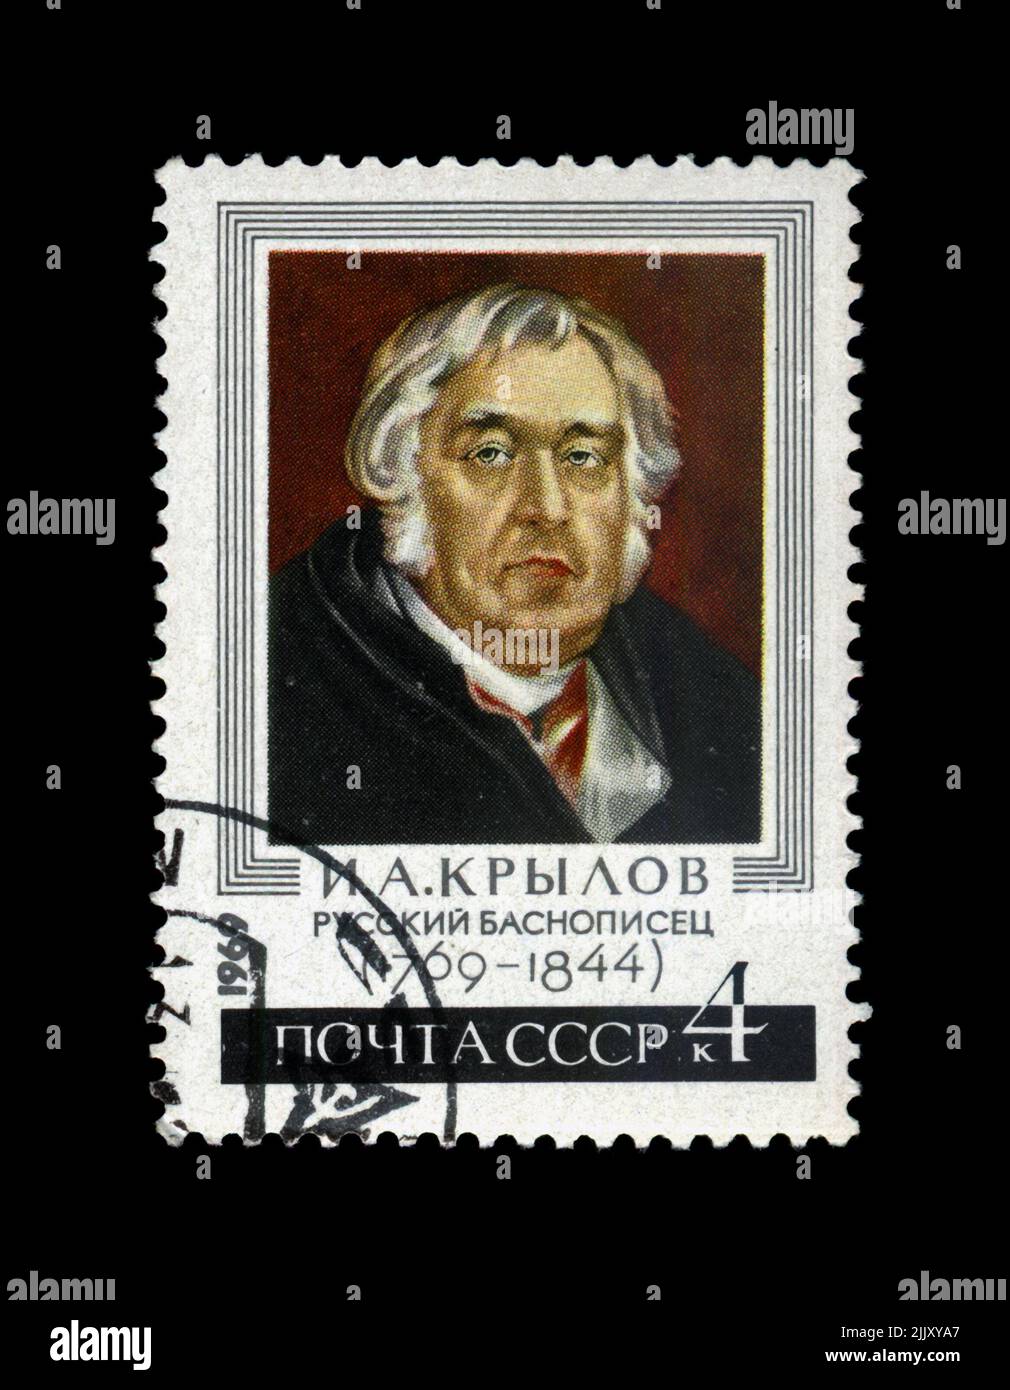 Ivan Krylov (1769-1844), famoso scrittore di favola, circa 1969. vintage cancellato timbro postale stampato in URSS Foto Stock